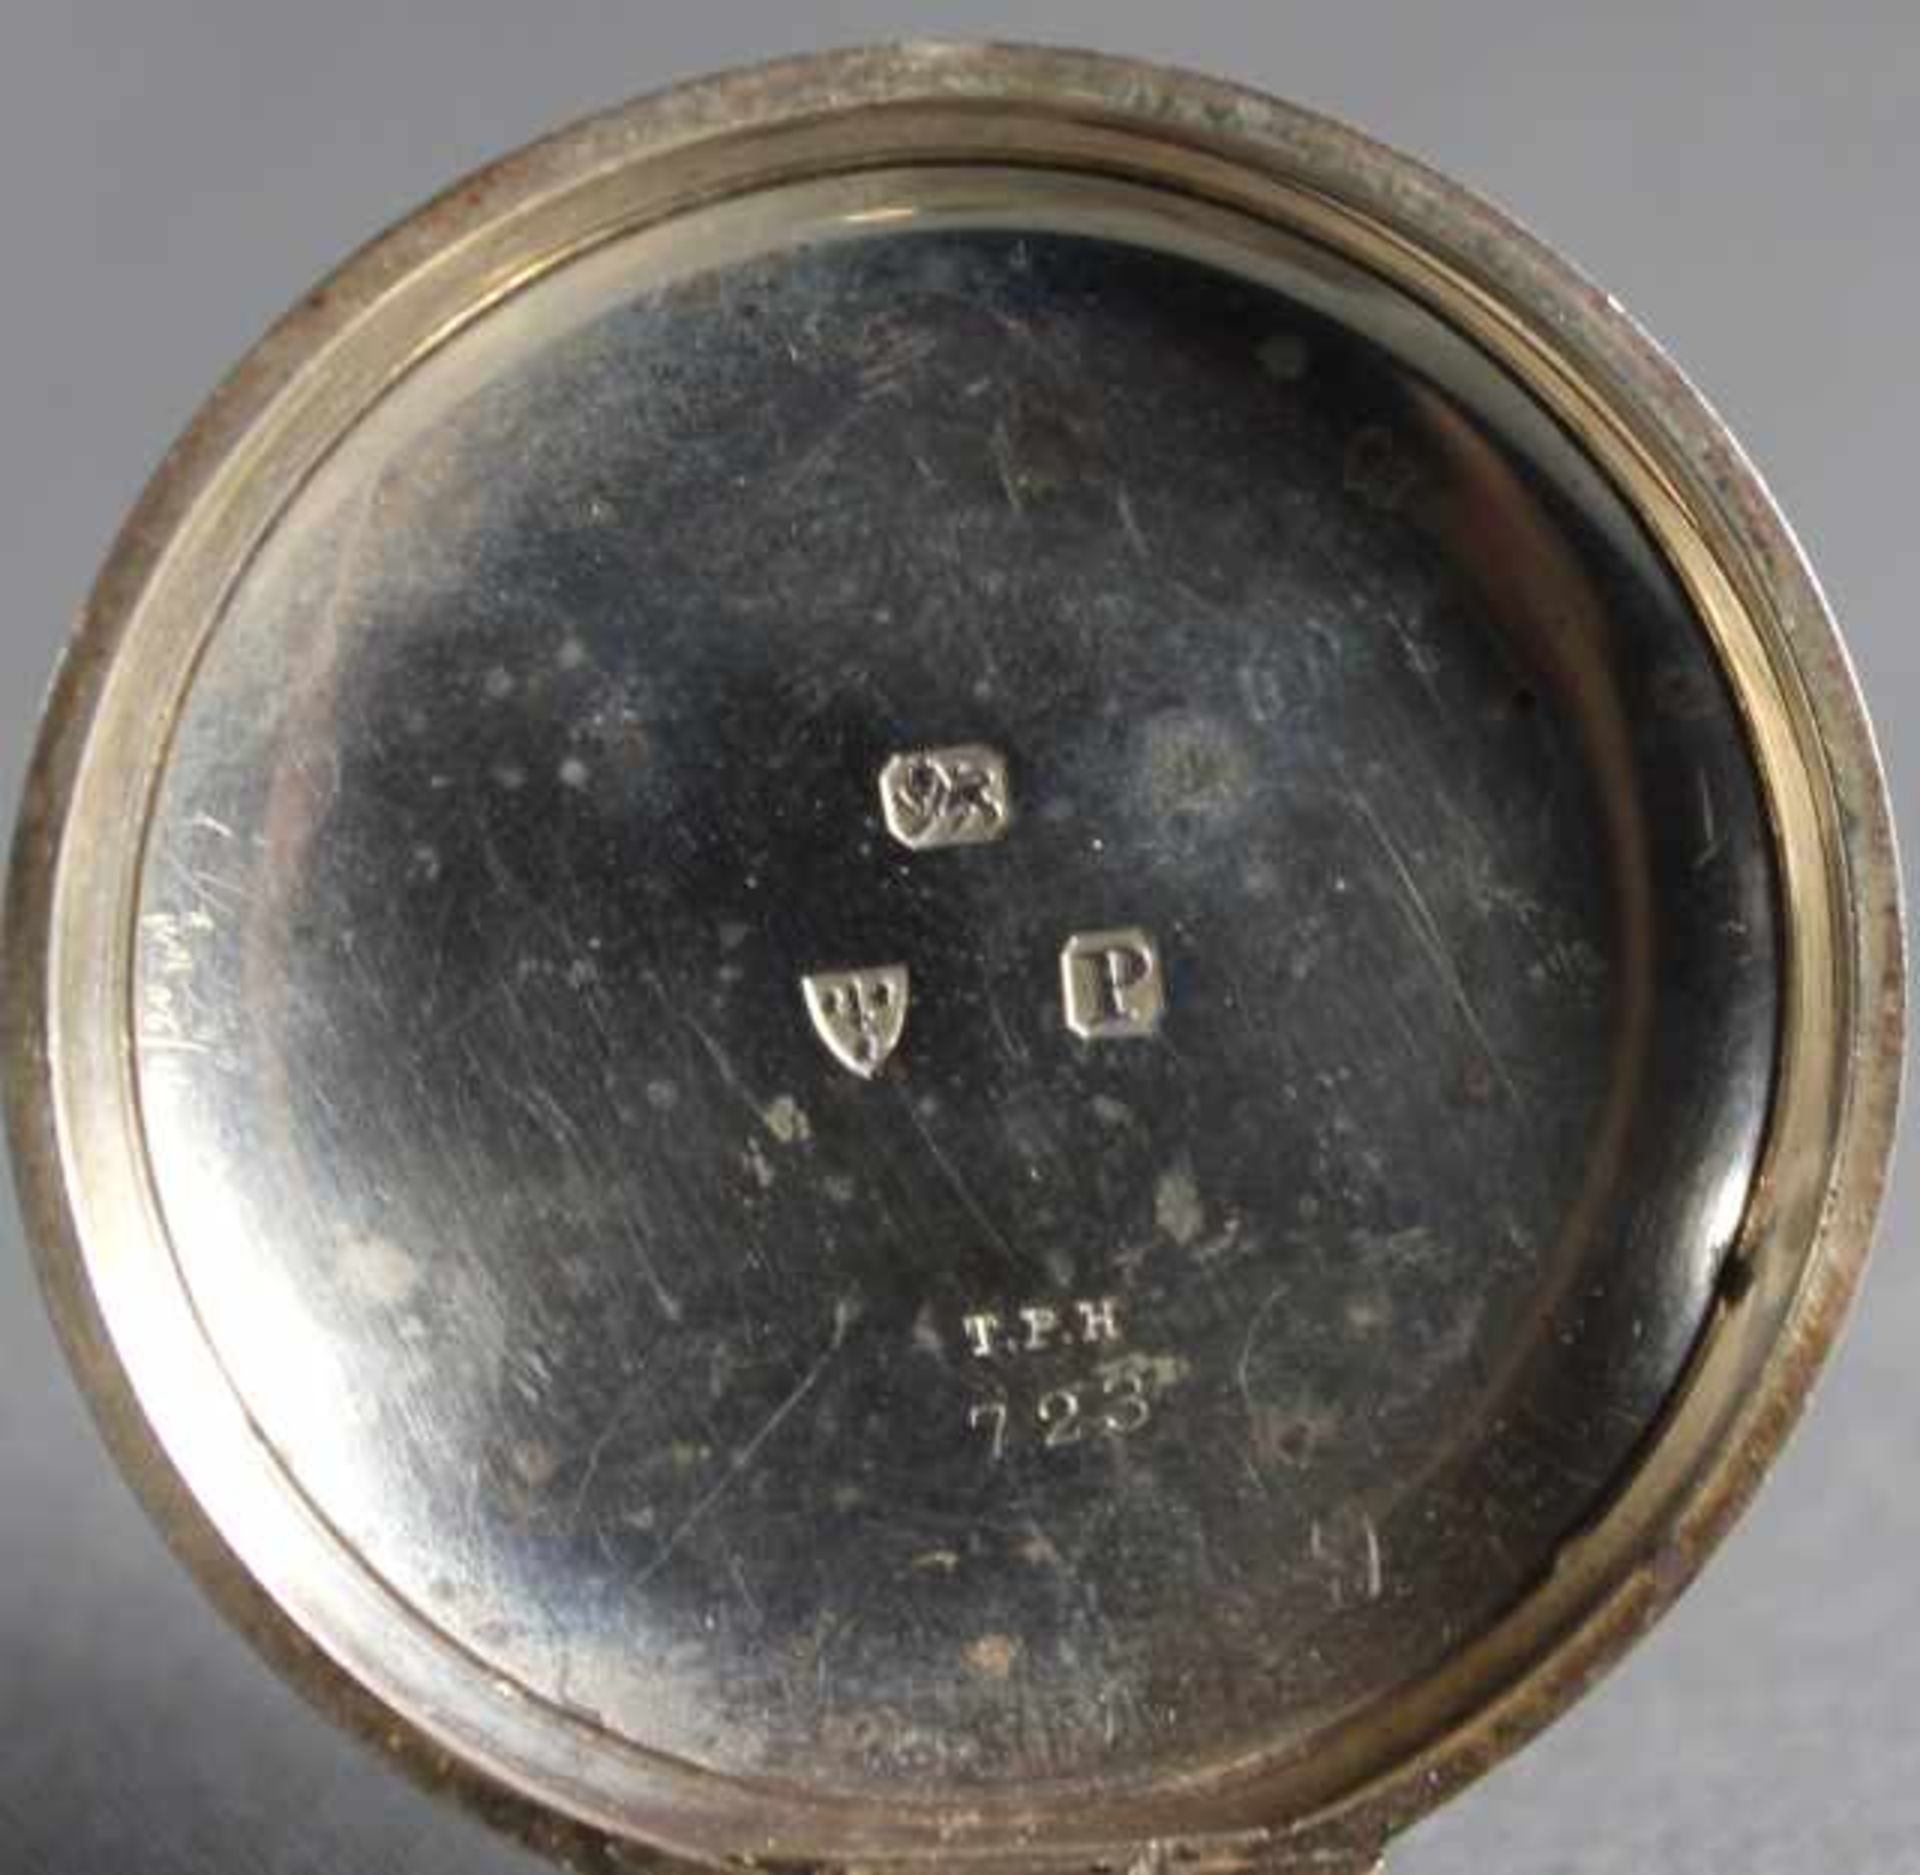 1 Taschenuhr Silber, Punzen u.a. schreitender Löwe "John Forrest London", Nr. 723, weißes - Image 3 of 4